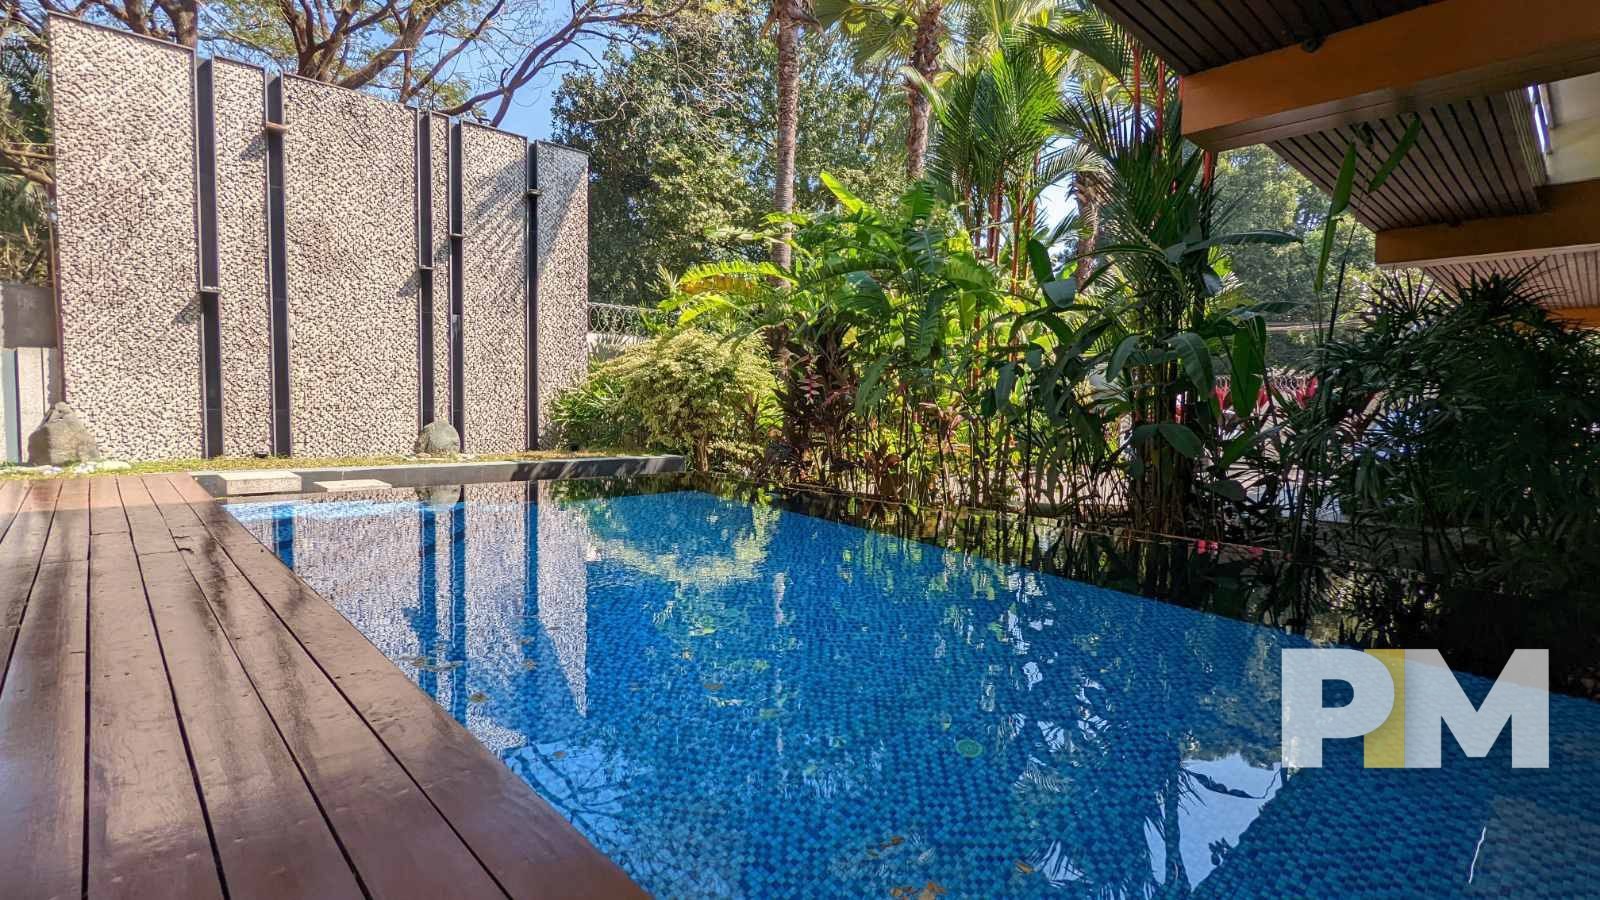 swimming pool - myanmar real estate